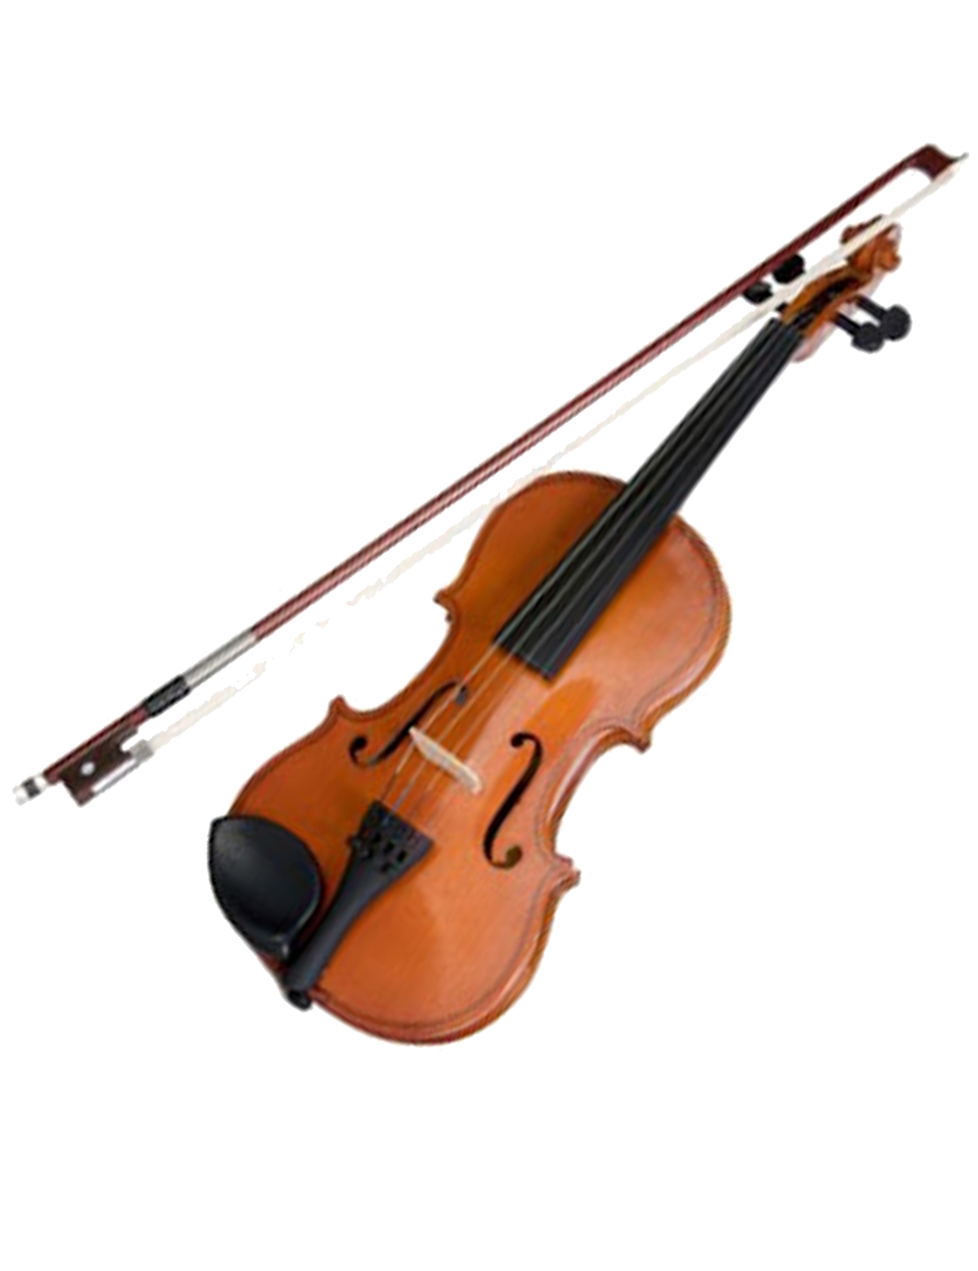 Violine und Bogen, Musikinstrument